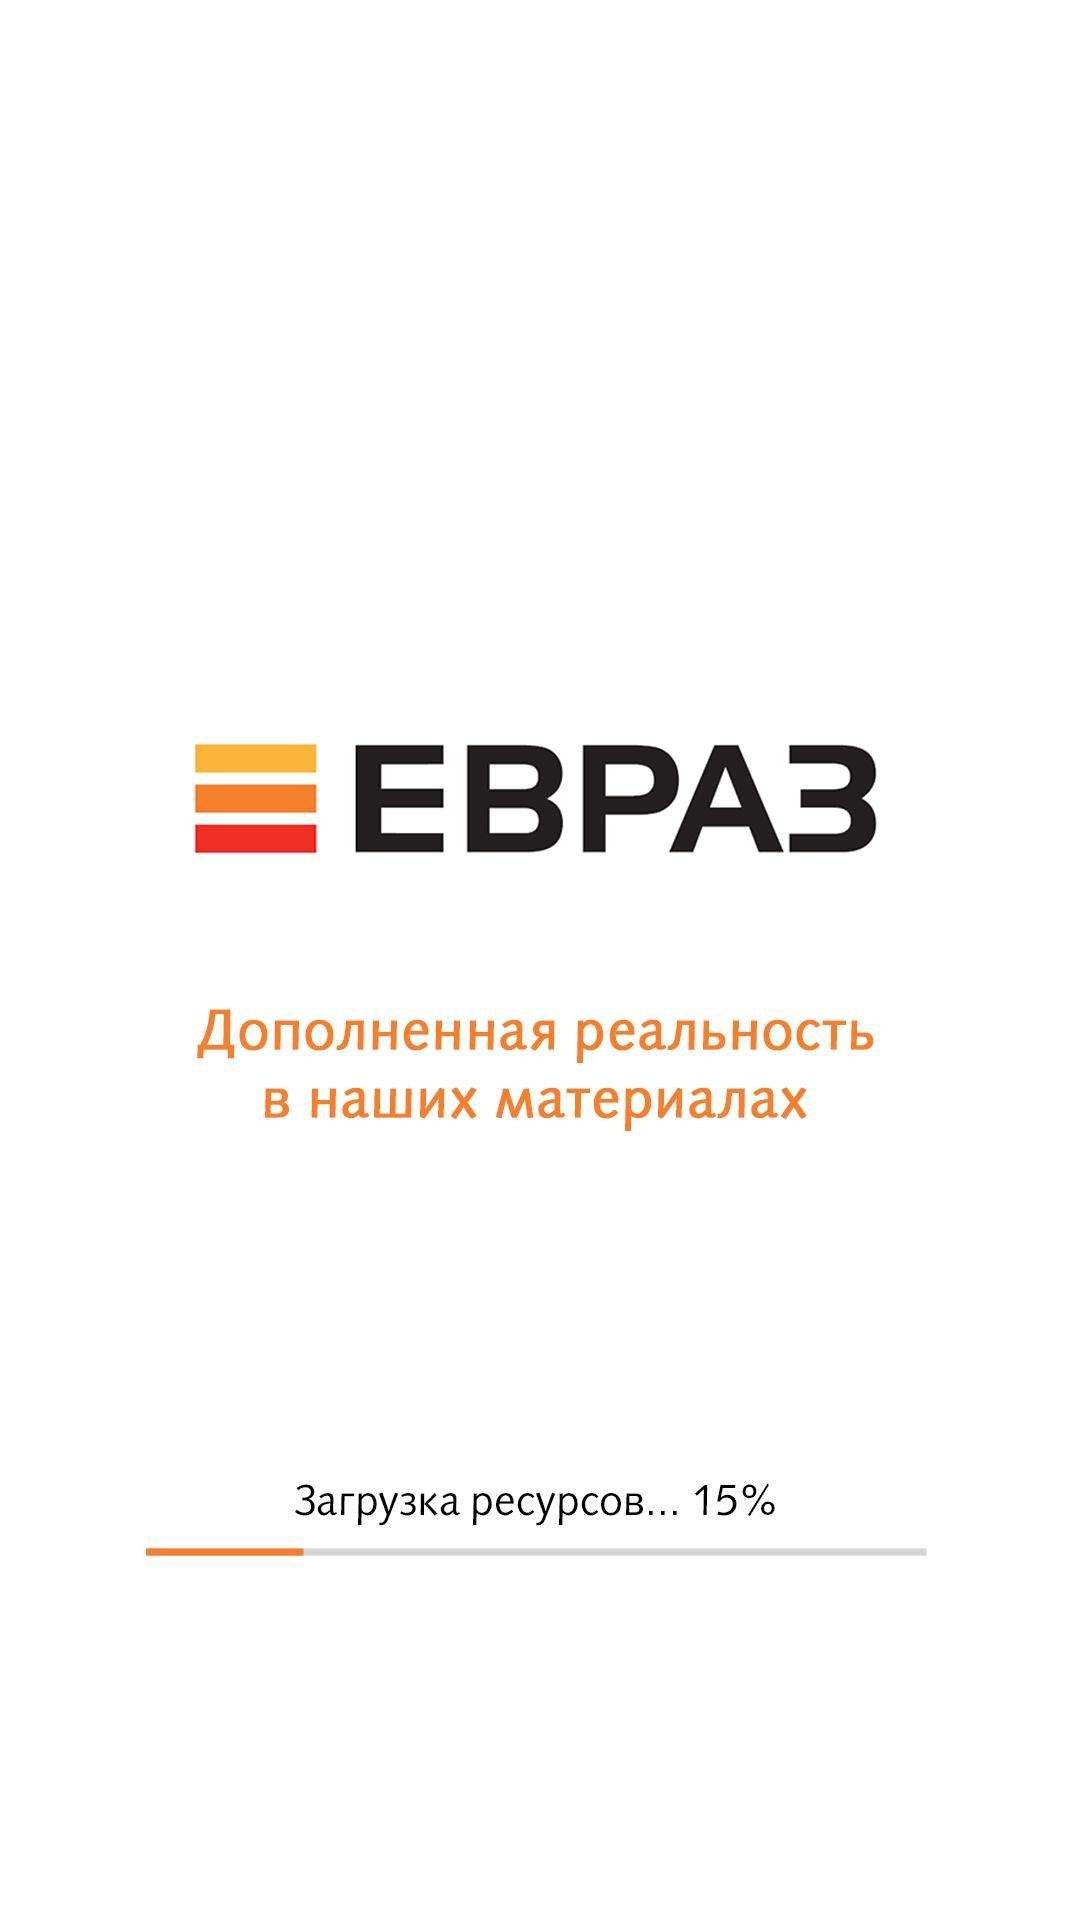 Логотип ЕВРАЗА для смартфона. ЕВРАЗ навигатор. Блокнот ЕВРАЗ. ЕВРАЗ компьютерная Графика.